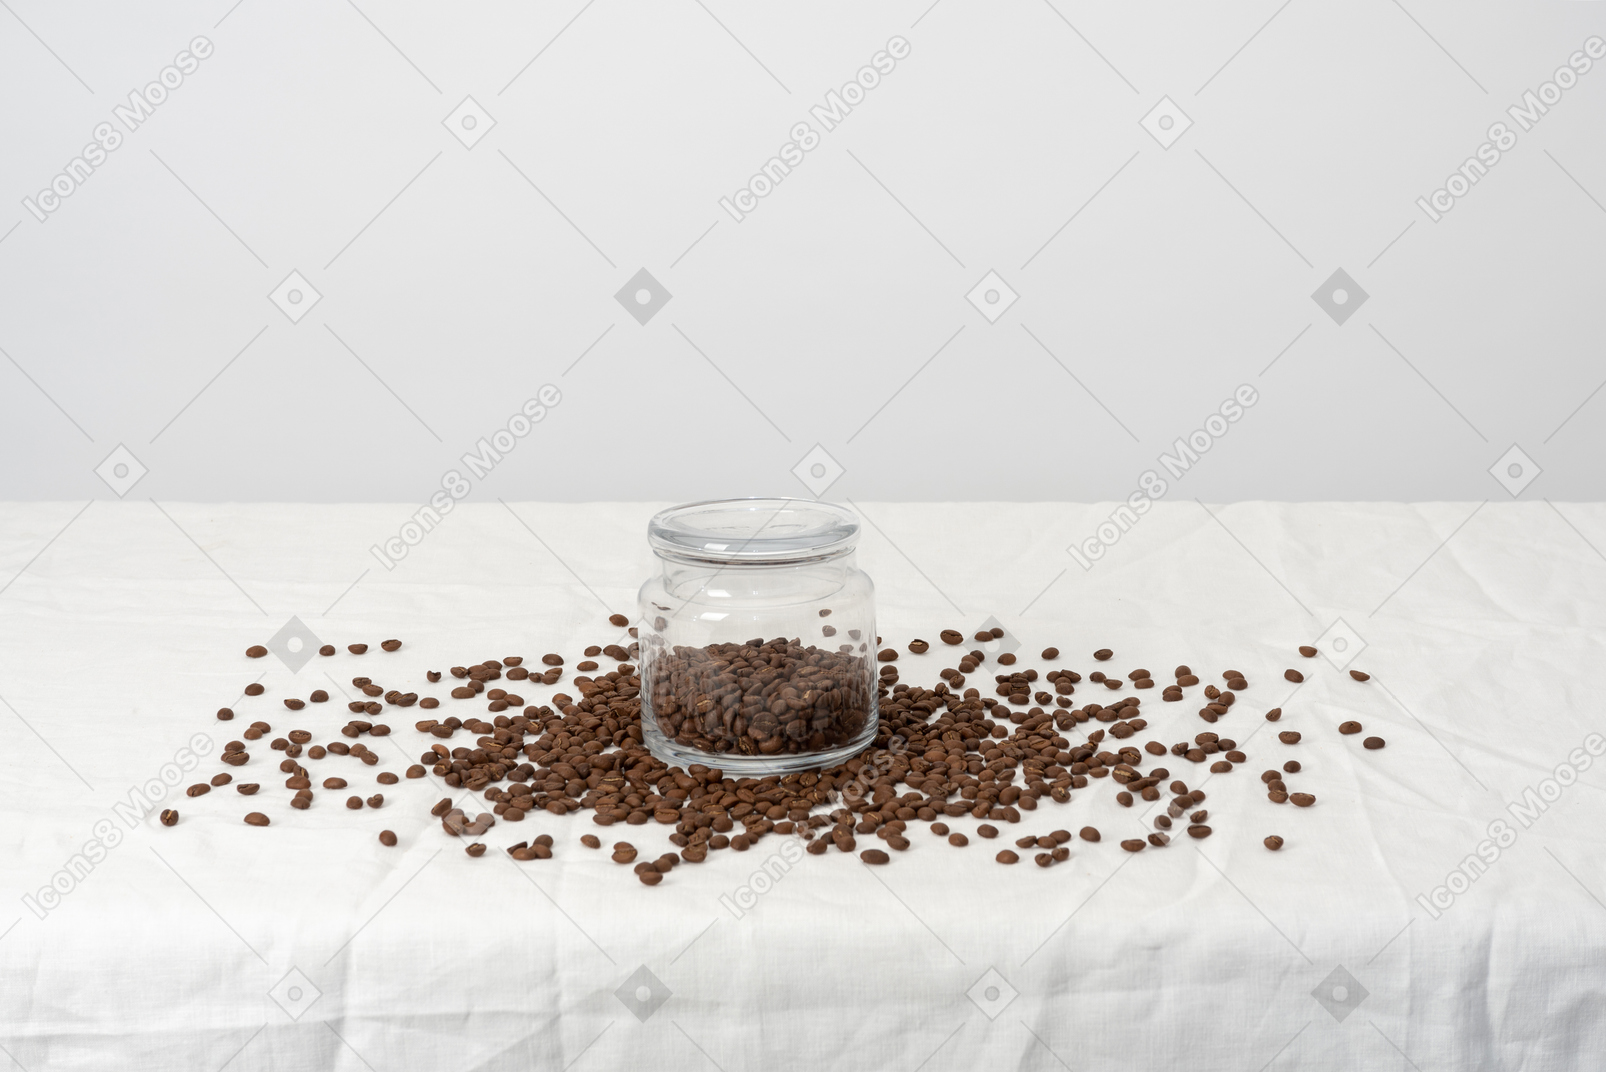 Kaffee im glas auf dem tisch